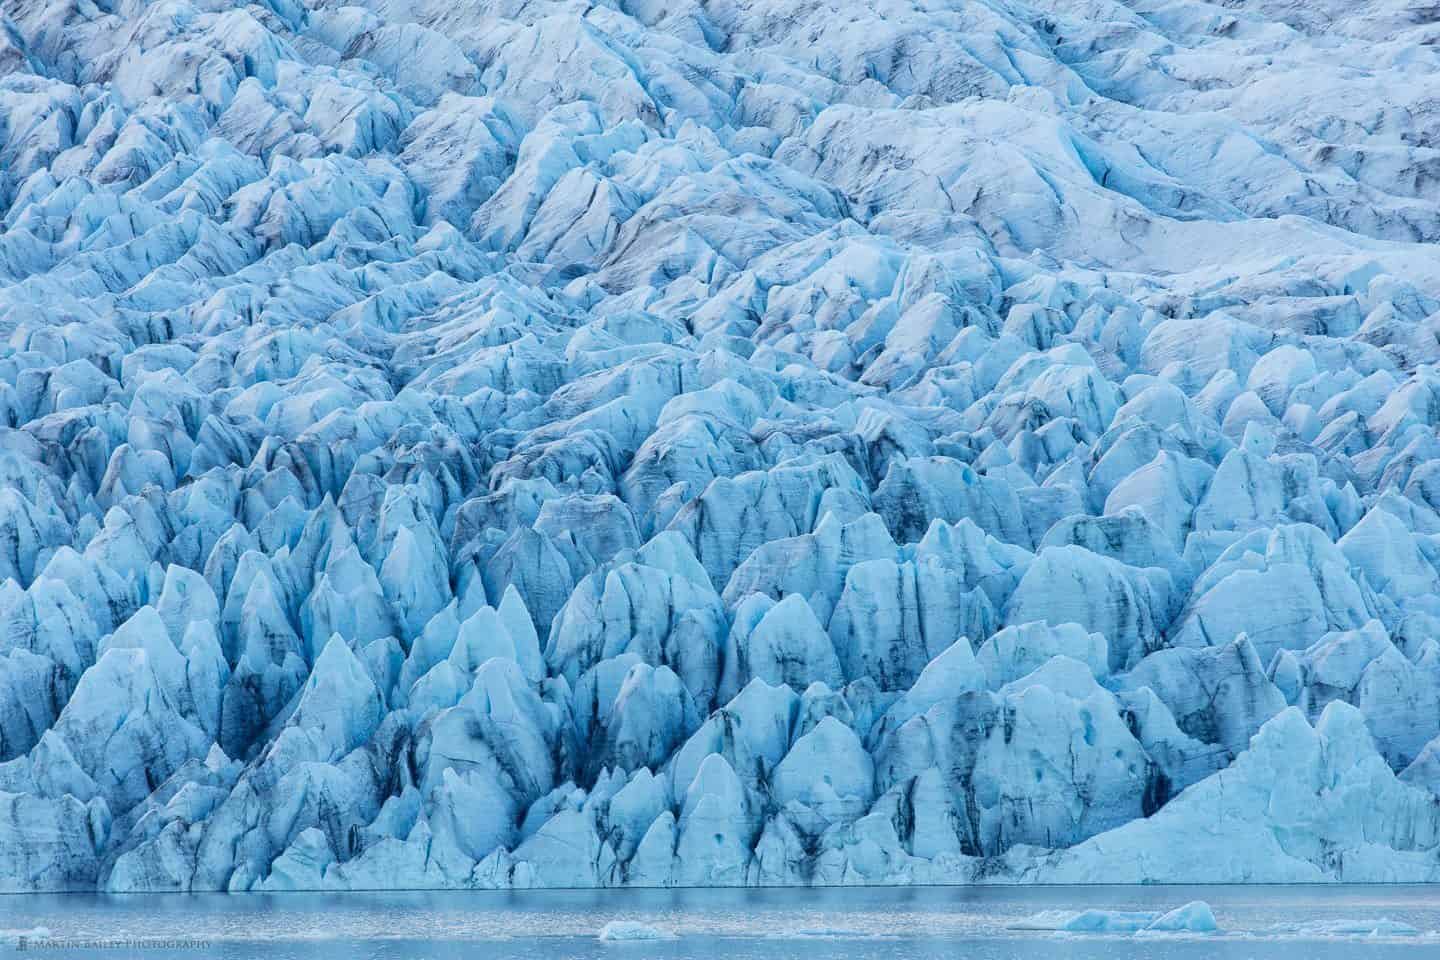 Fjallsjökull Glacier